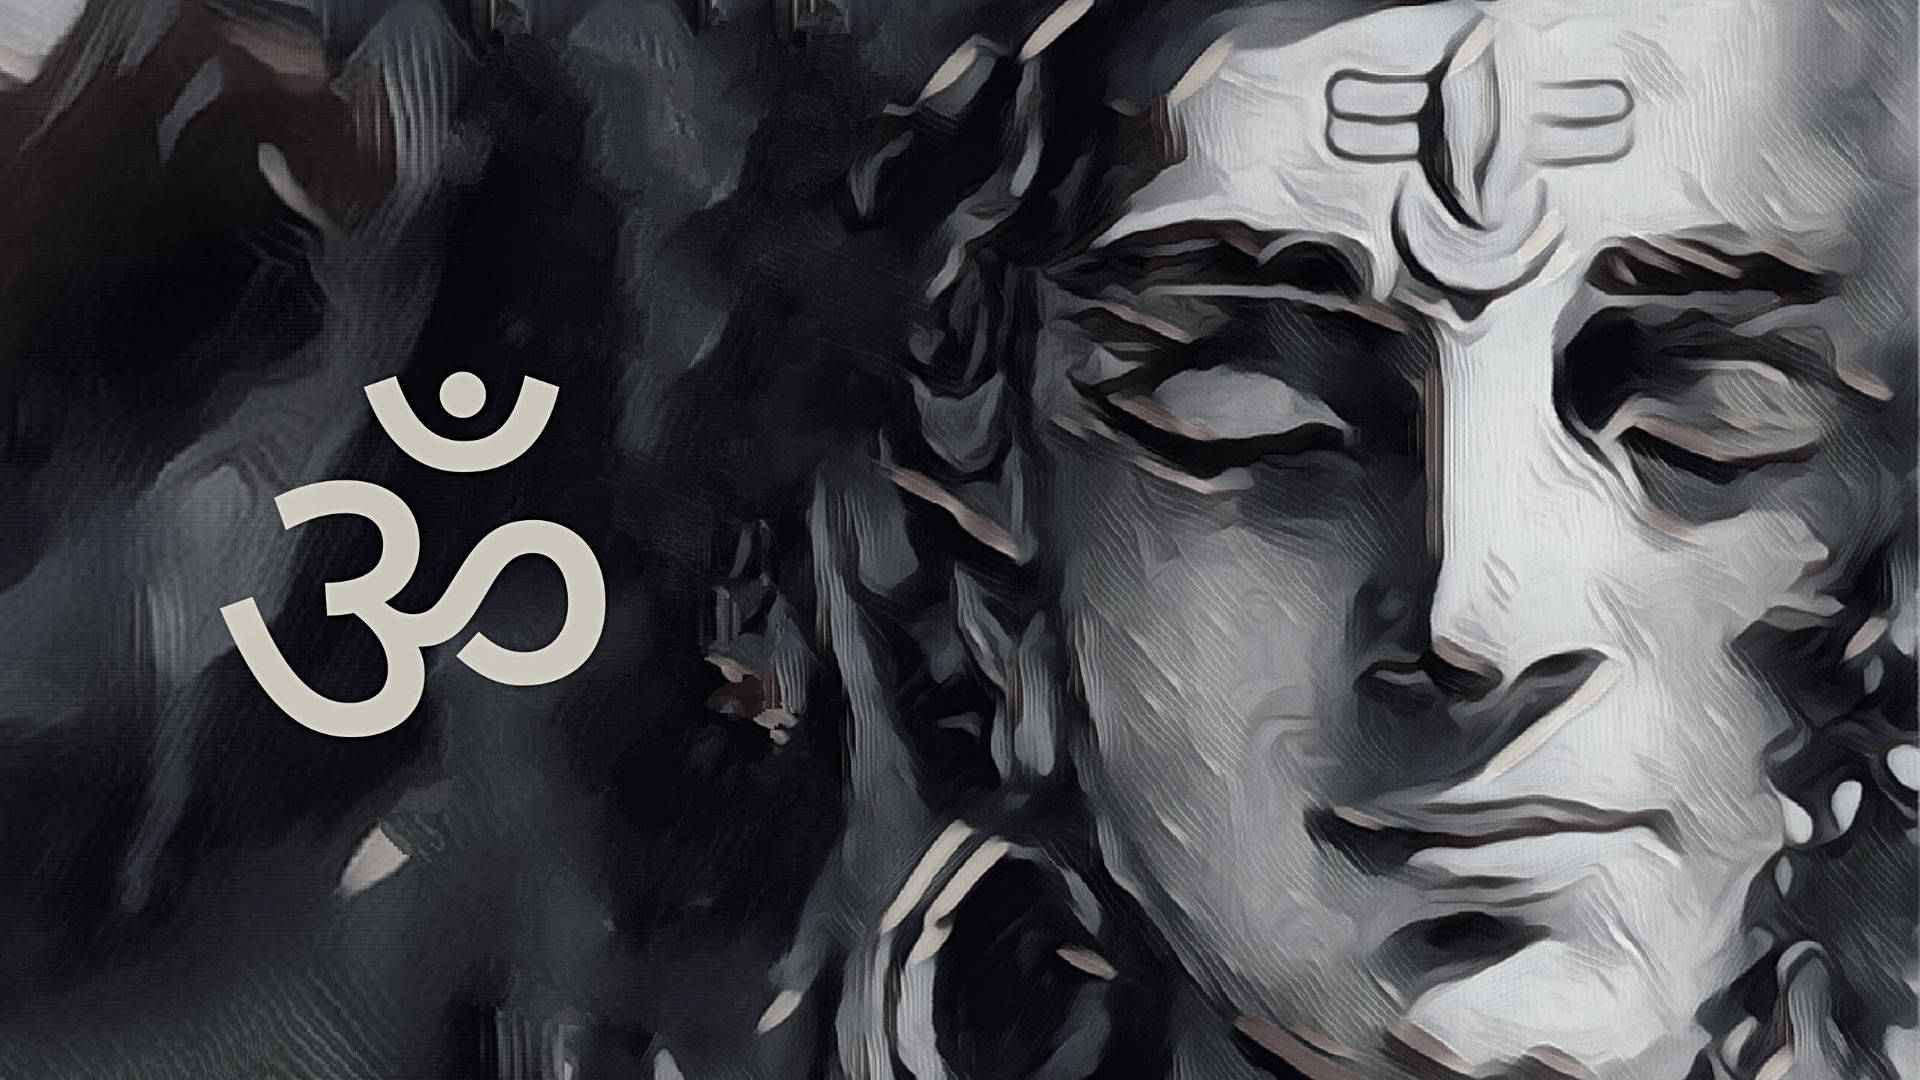 Free Shiva Dark Wallpaper Downloads, [100+] Shiva Dark Wallpapers for FREE  